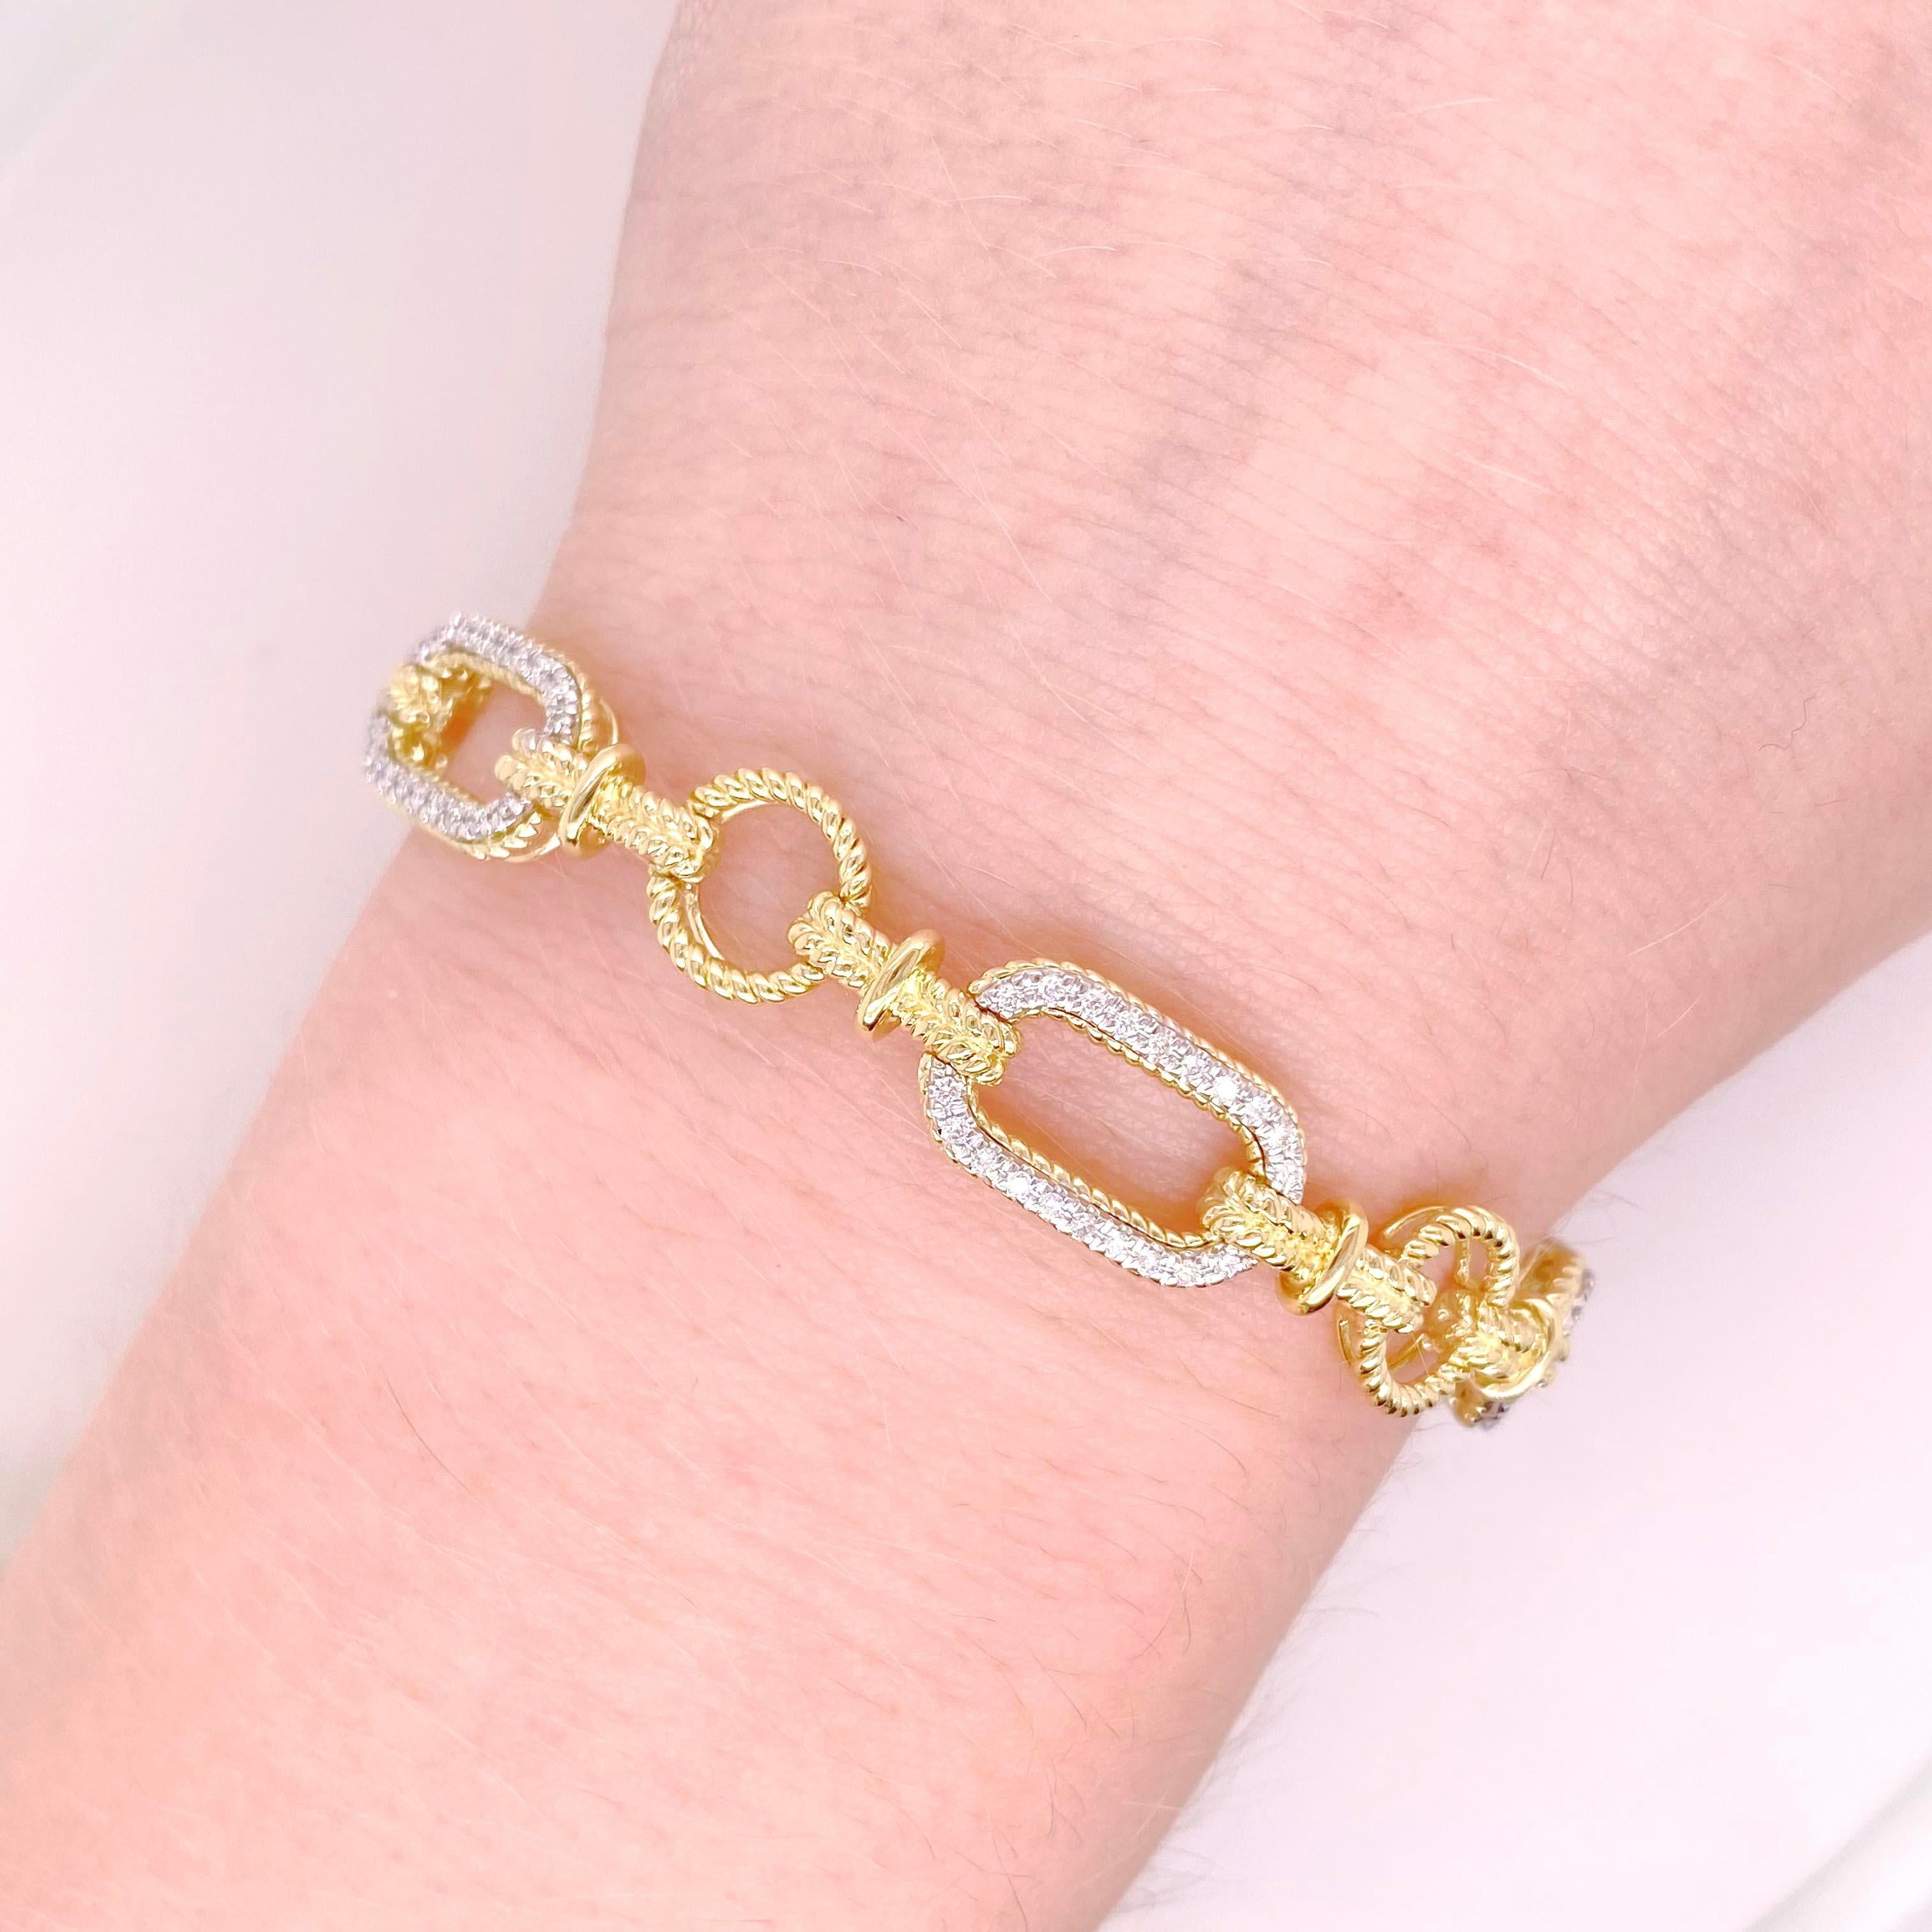 Dieses Armband ist die perfekte Ergänzung für jede Schmucksammlung! Bei dem Design wechseln sich diamantbesetzte Glieder mit perlenbesetzten Goldgliedern ab und verleihen dem Armband einen vielseitigen und einzigartigen Look. Die Diamanten sind